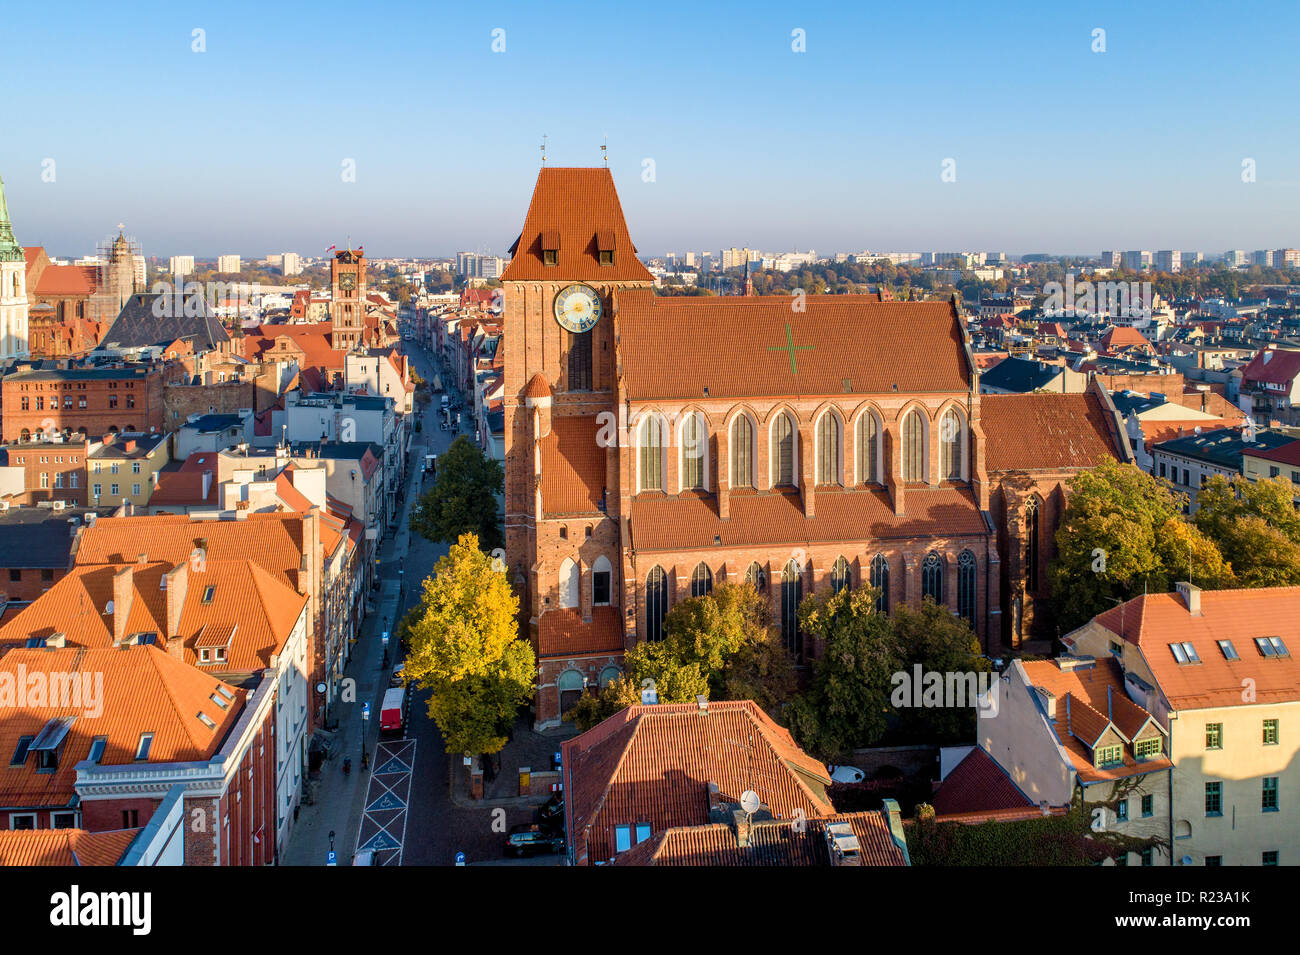 Cité médiévale cathédrale gothique de Saint John à Torun, Pologne, et la vieille ville avec la tour de ville. Banque D'Images